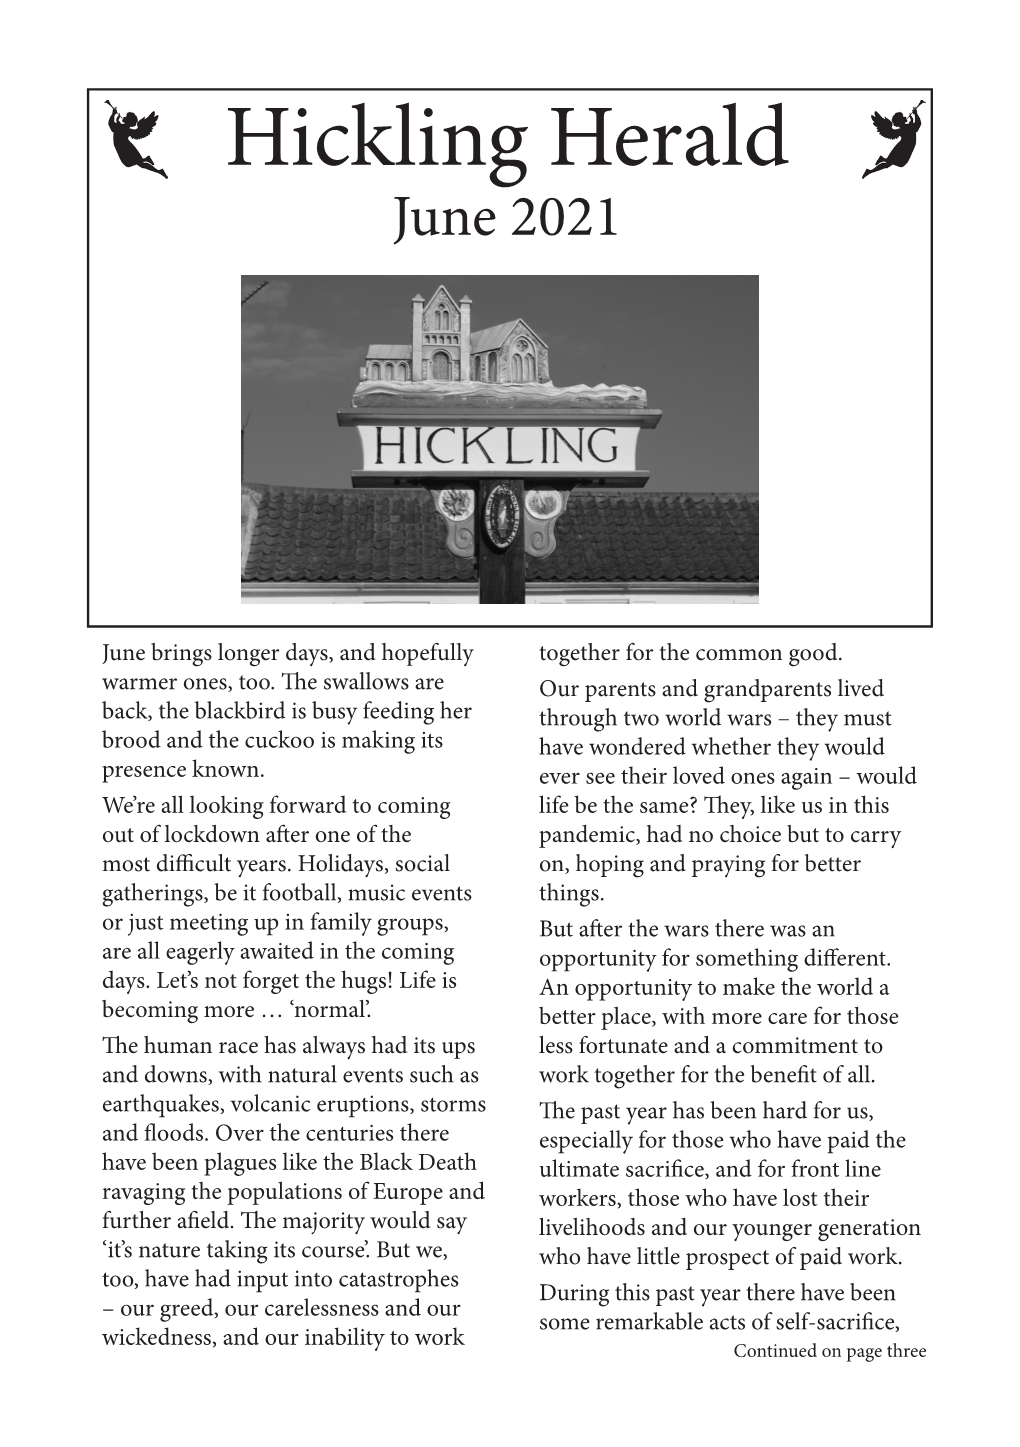 Hickling Herald June 2021